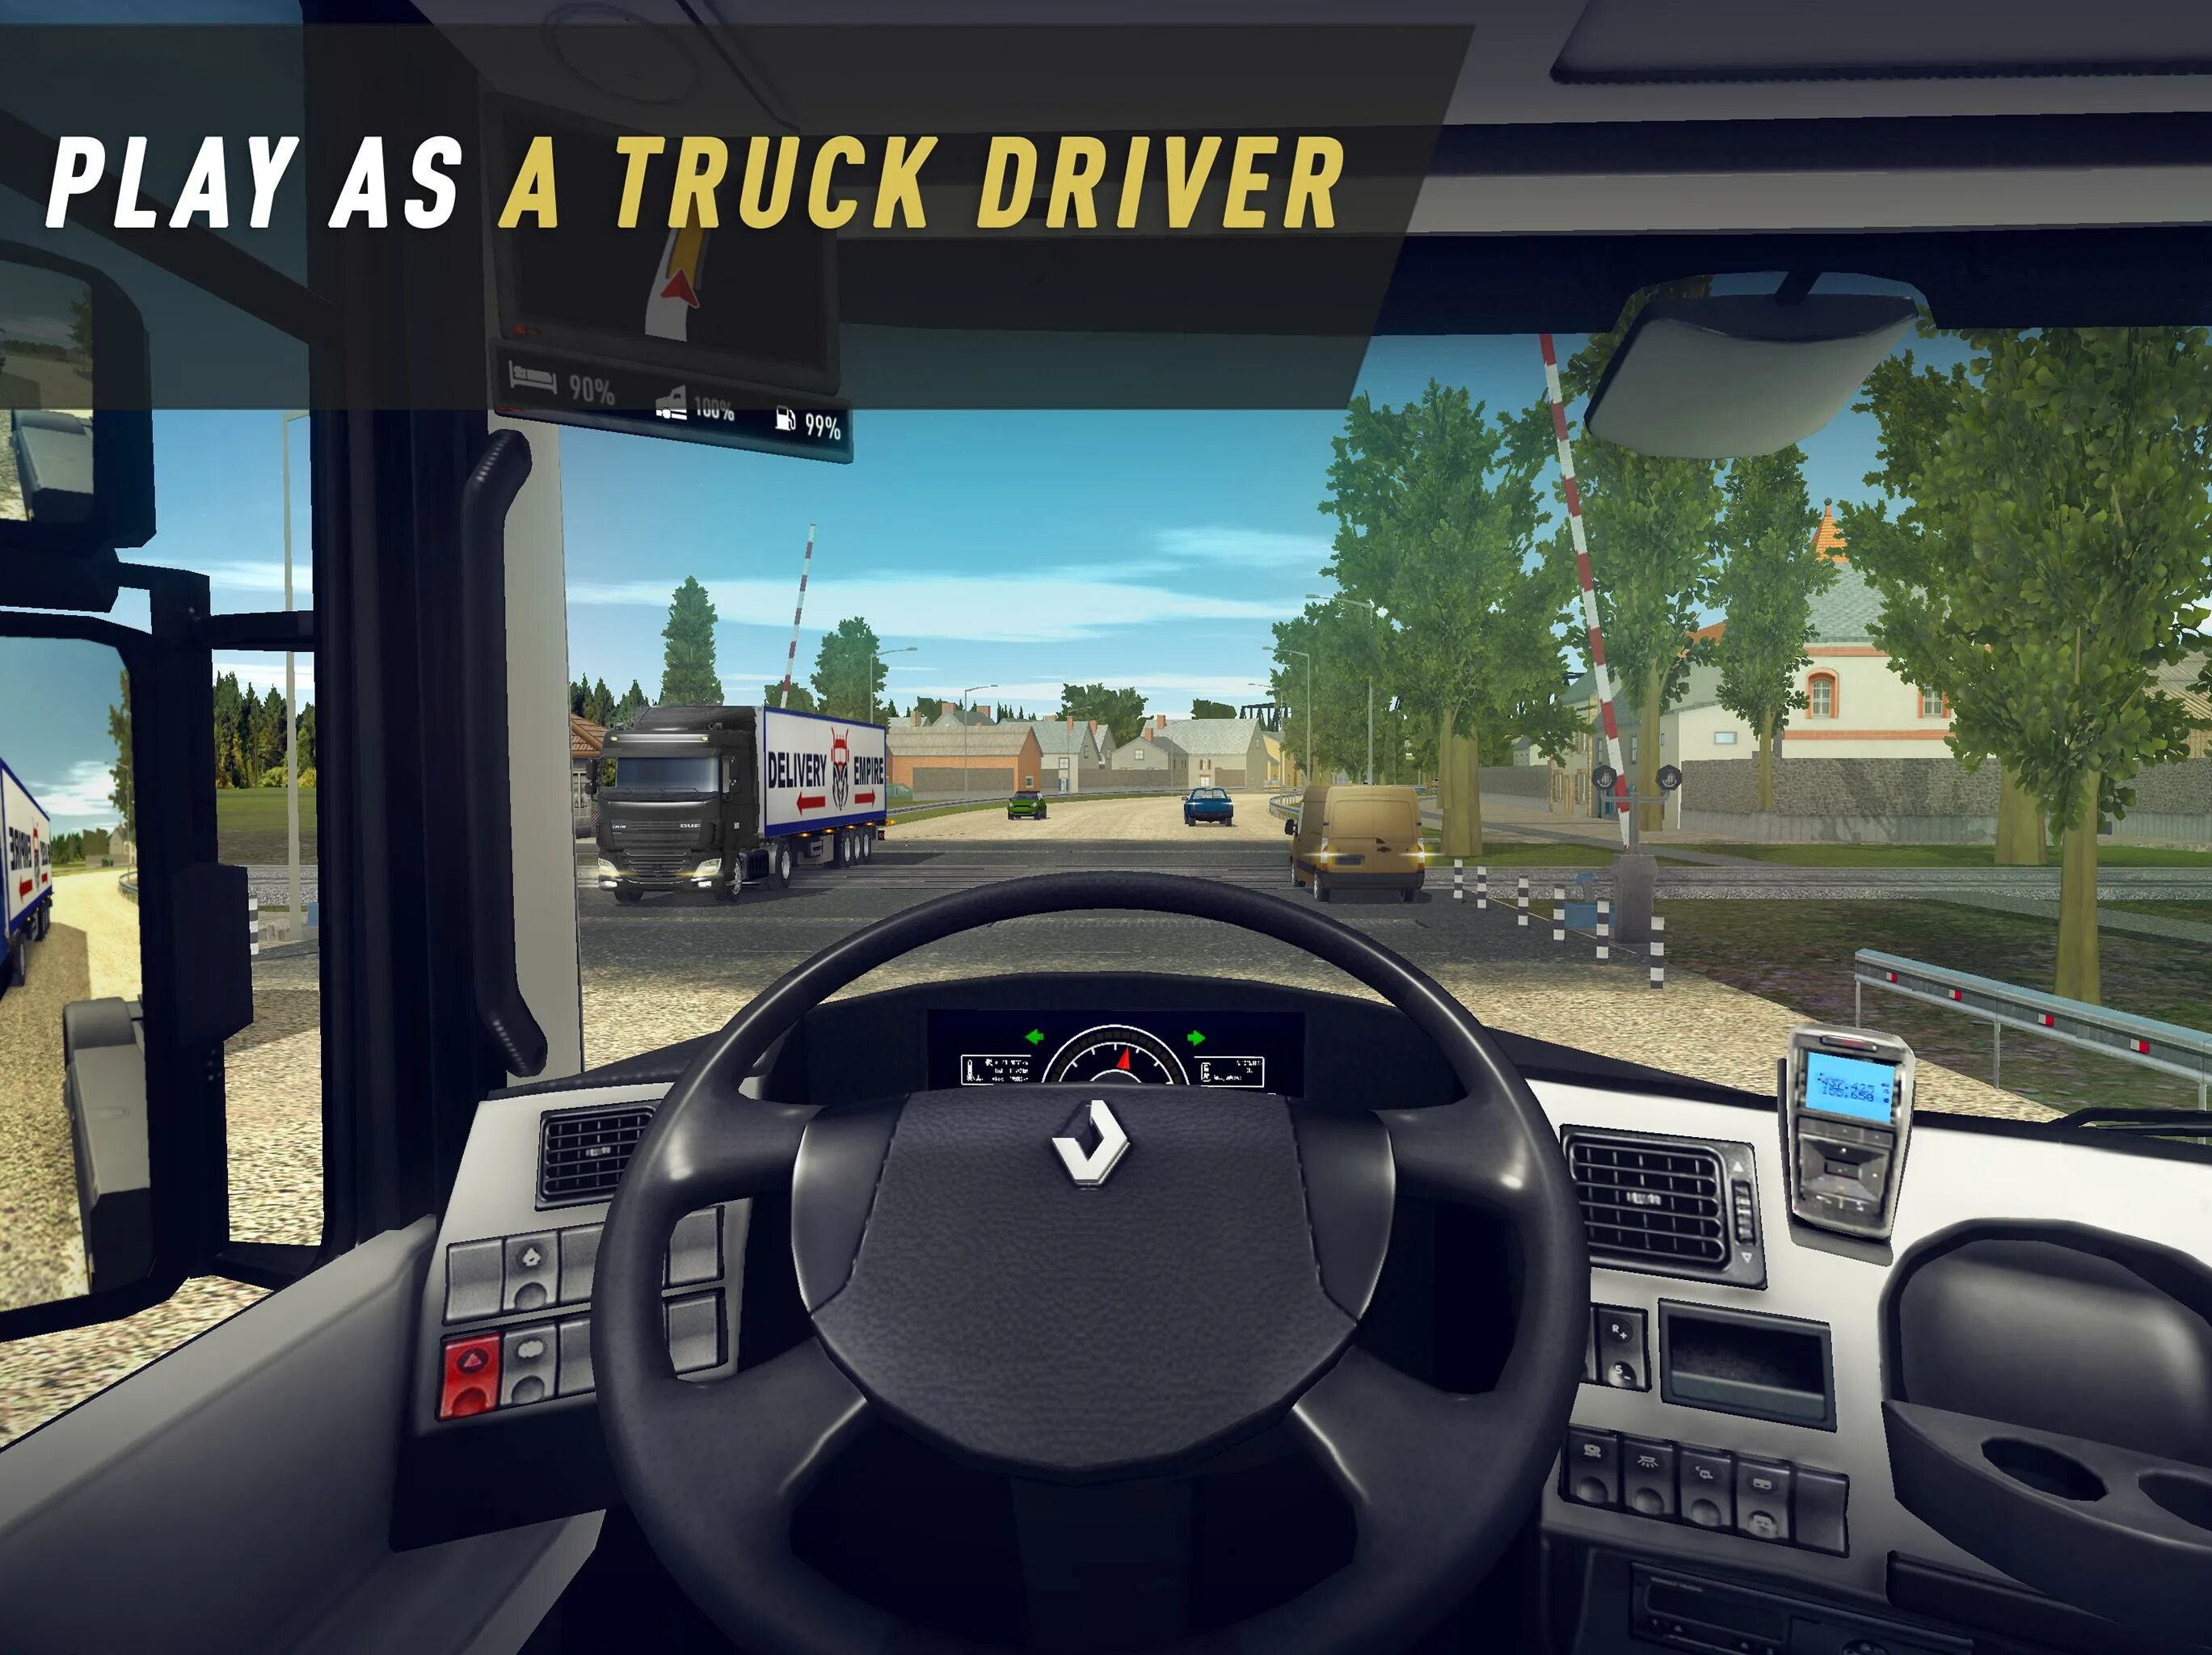 Дальнобойщики симулятор Truck Simulator. Truck World дальнобойщики. Симулятор дальнобойщика 2022. Симулятор дальнобойщика APK. Играть про симуляторы